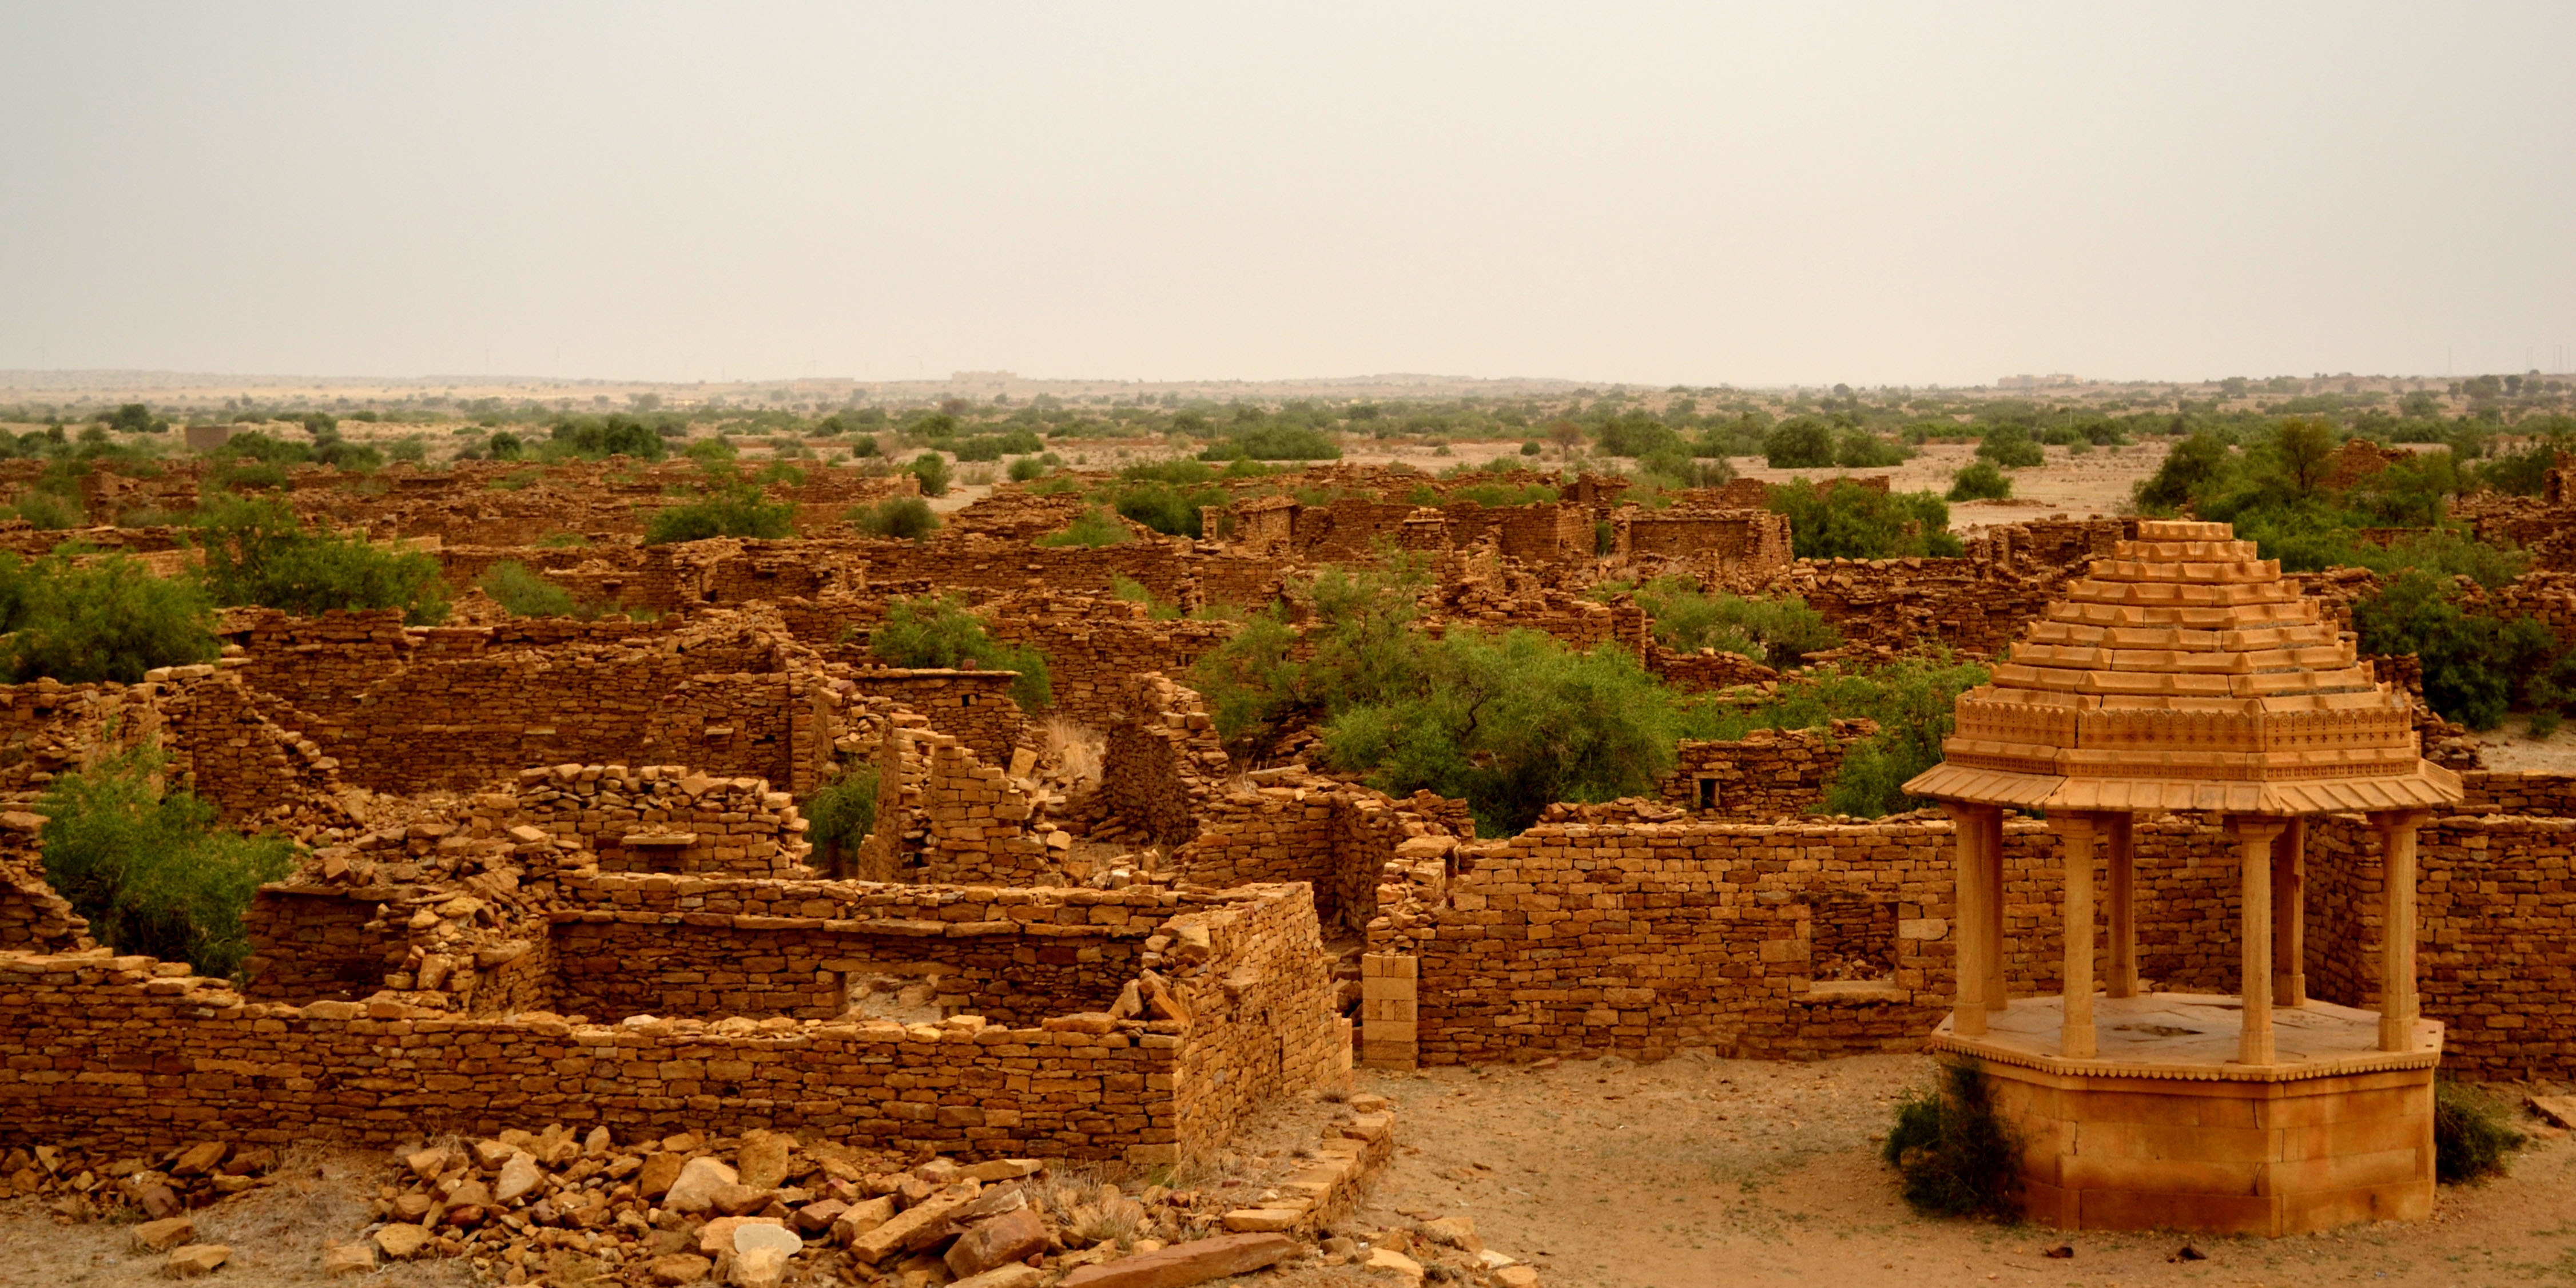 Das Dorf ist in der Zeit eingefroren, nachdem das „Monster von Jaisalmer“ die Einheimischen vertrieben hat